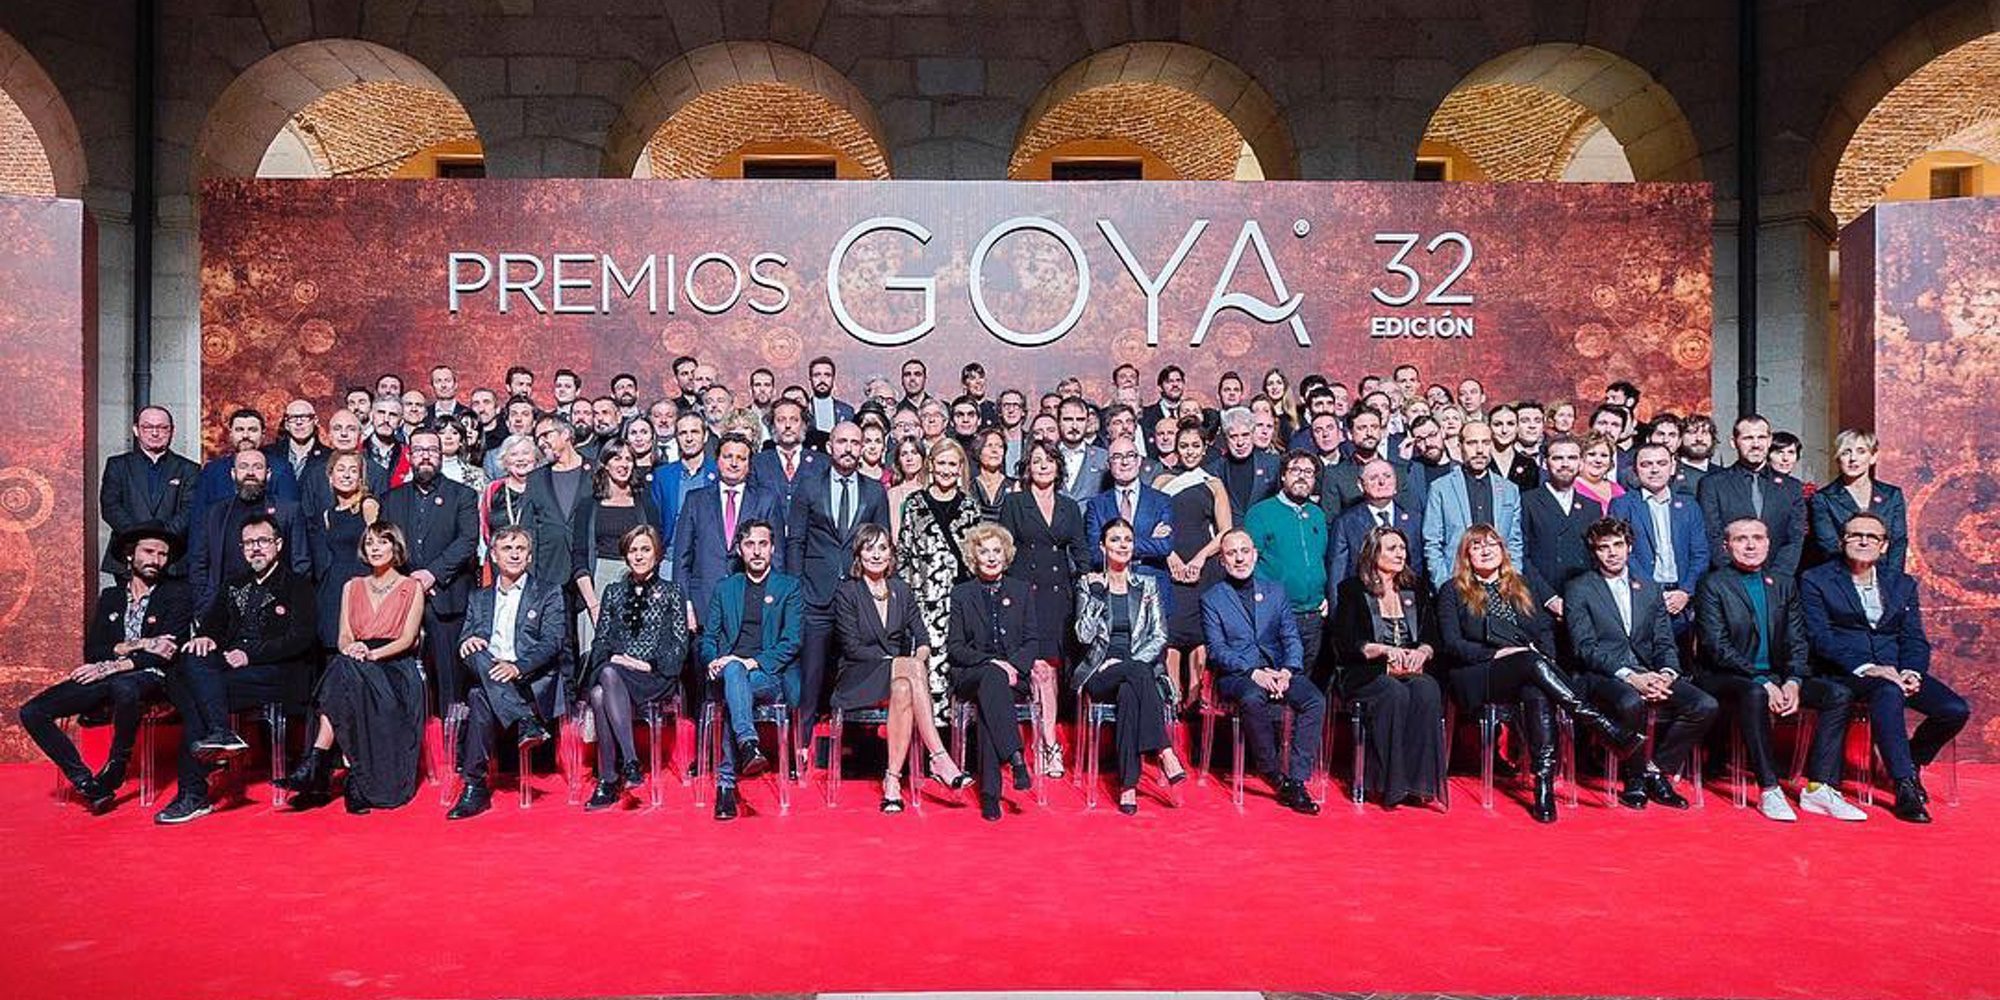 Los Premios Goya 2018 denunciarán la desigualdad de género a través de unos abanicos rojos